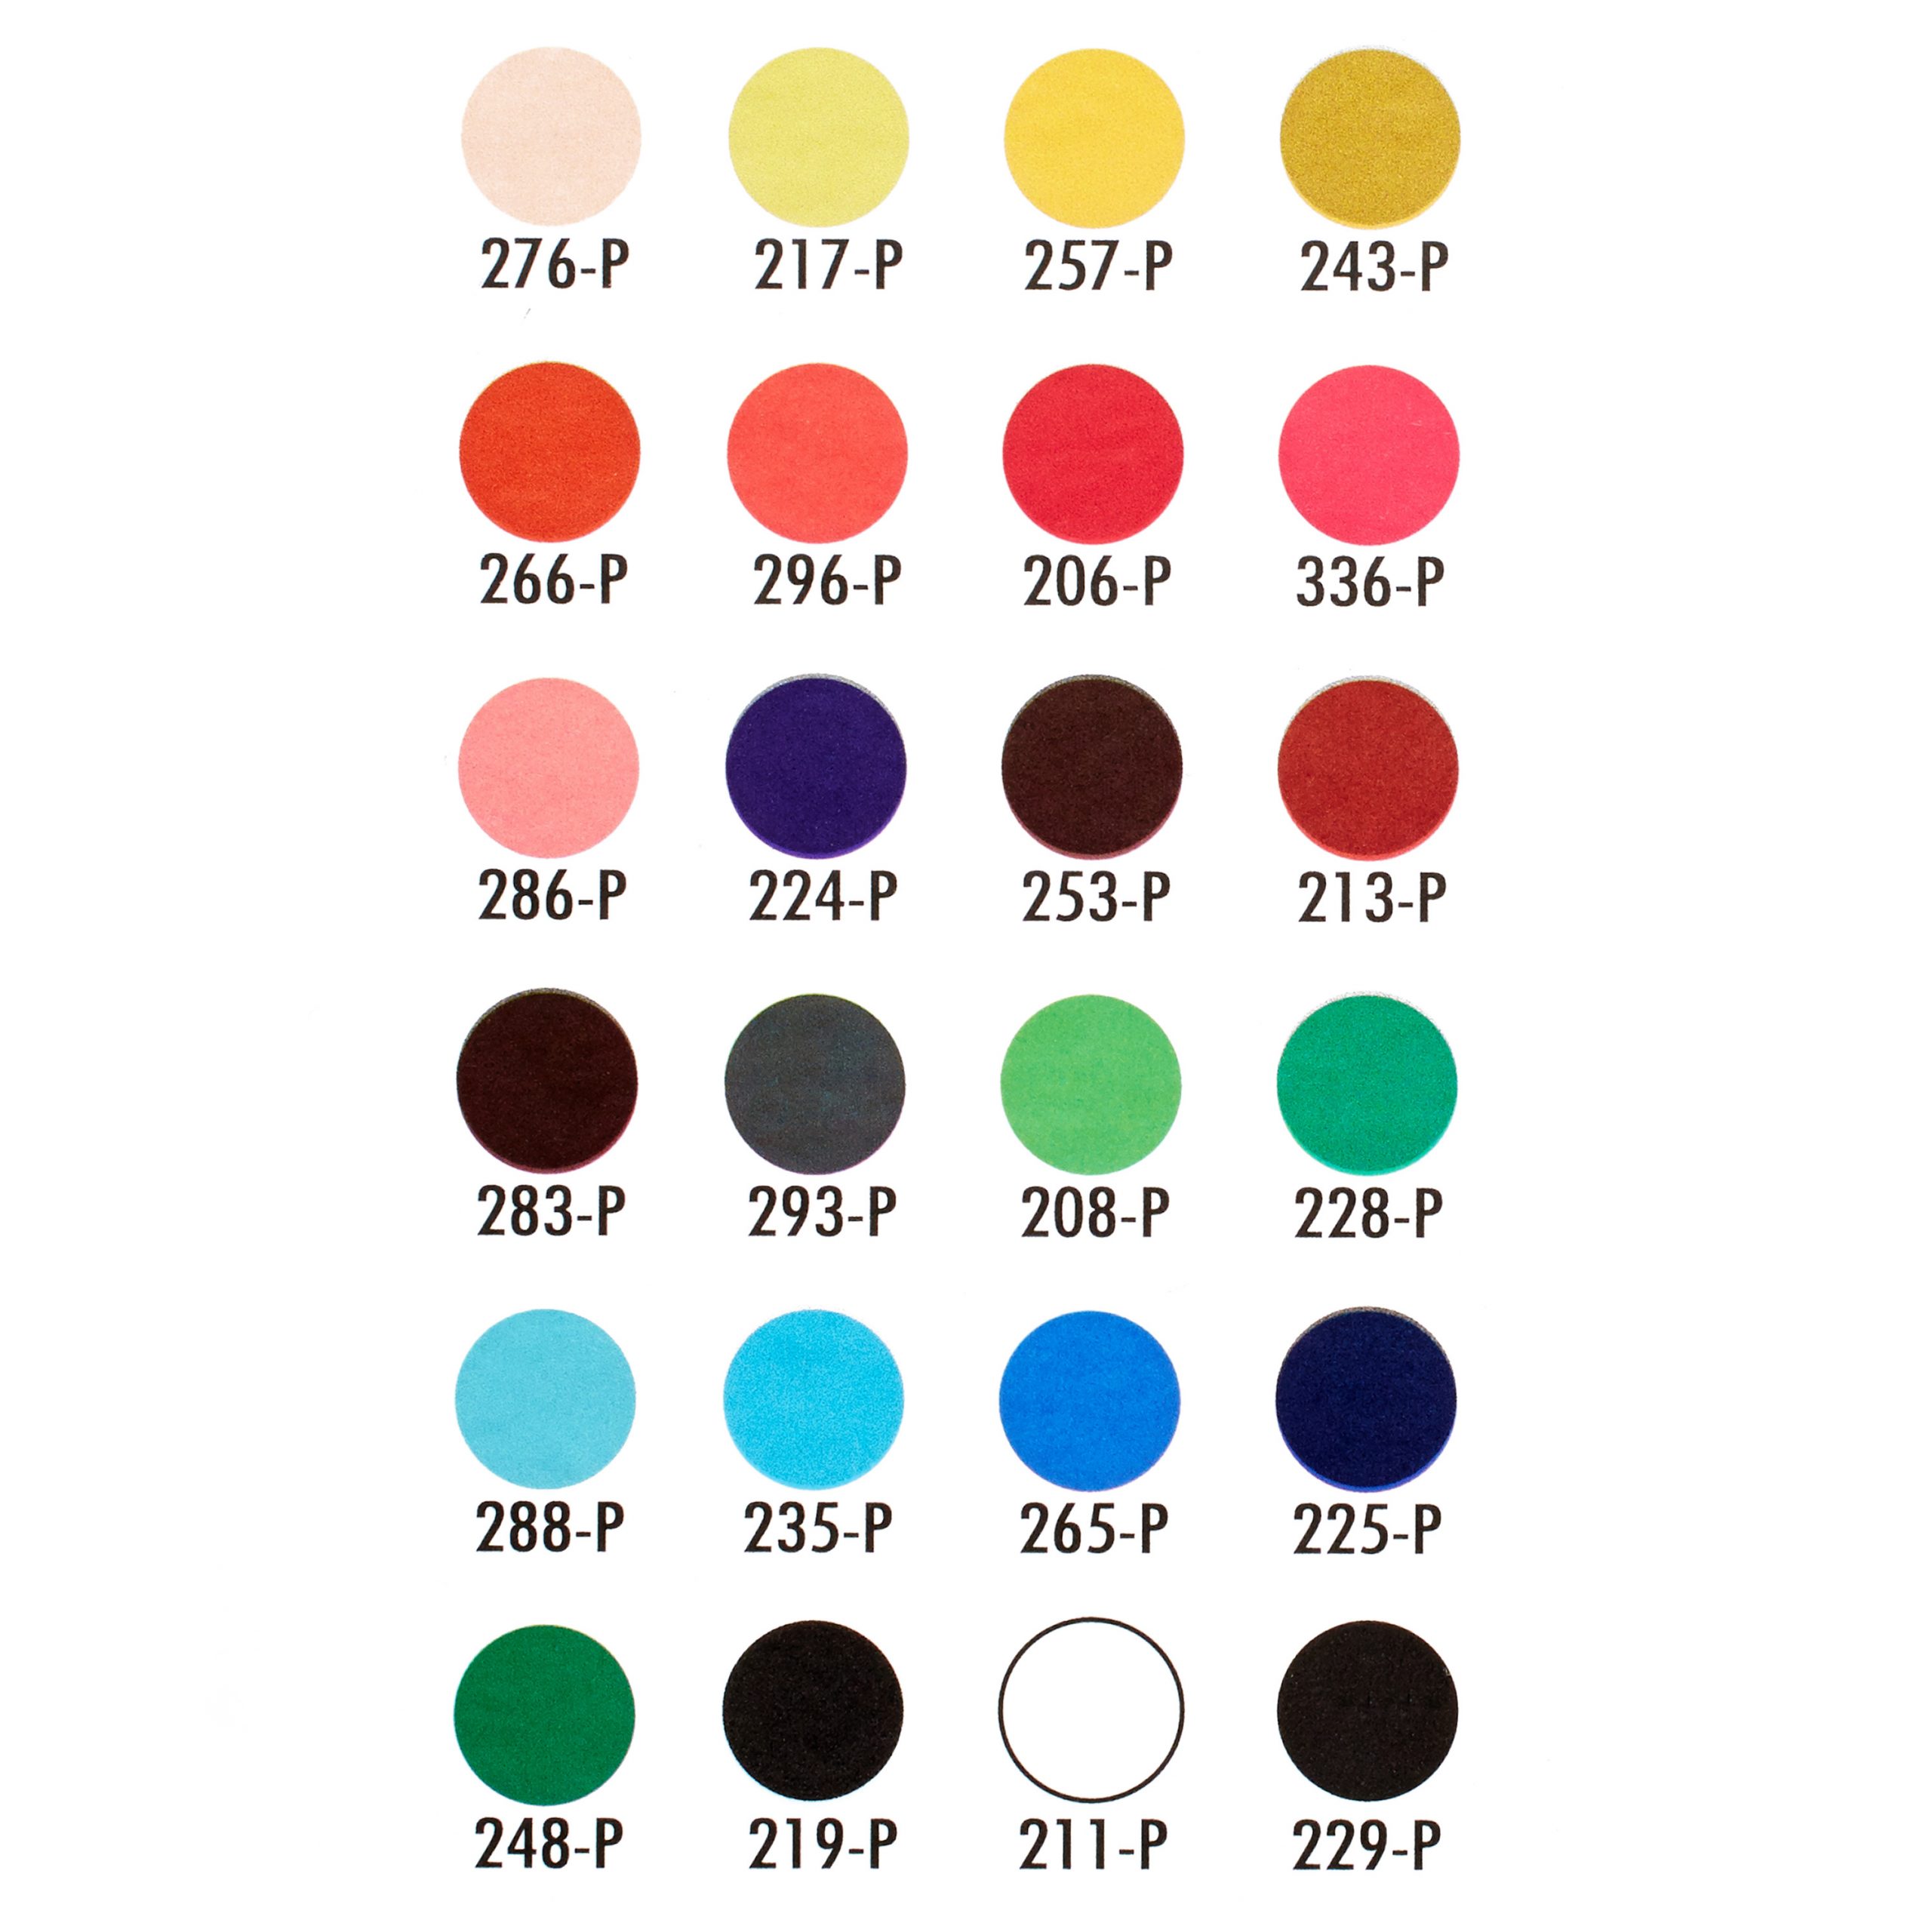 27049-prismacolor-pastels-premiernupastels-package-colorkey